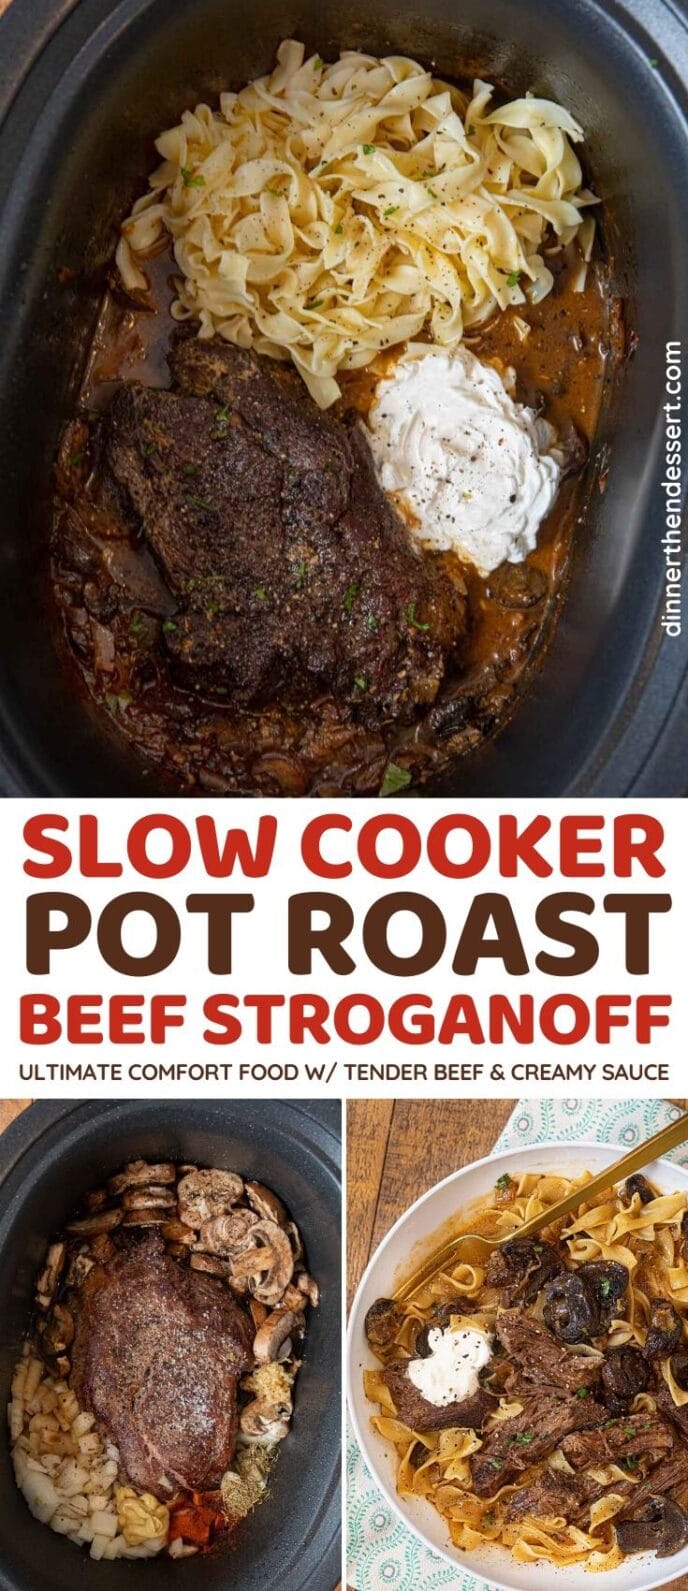 Slow Cooker Pot Roast Beef Stroganoff collage